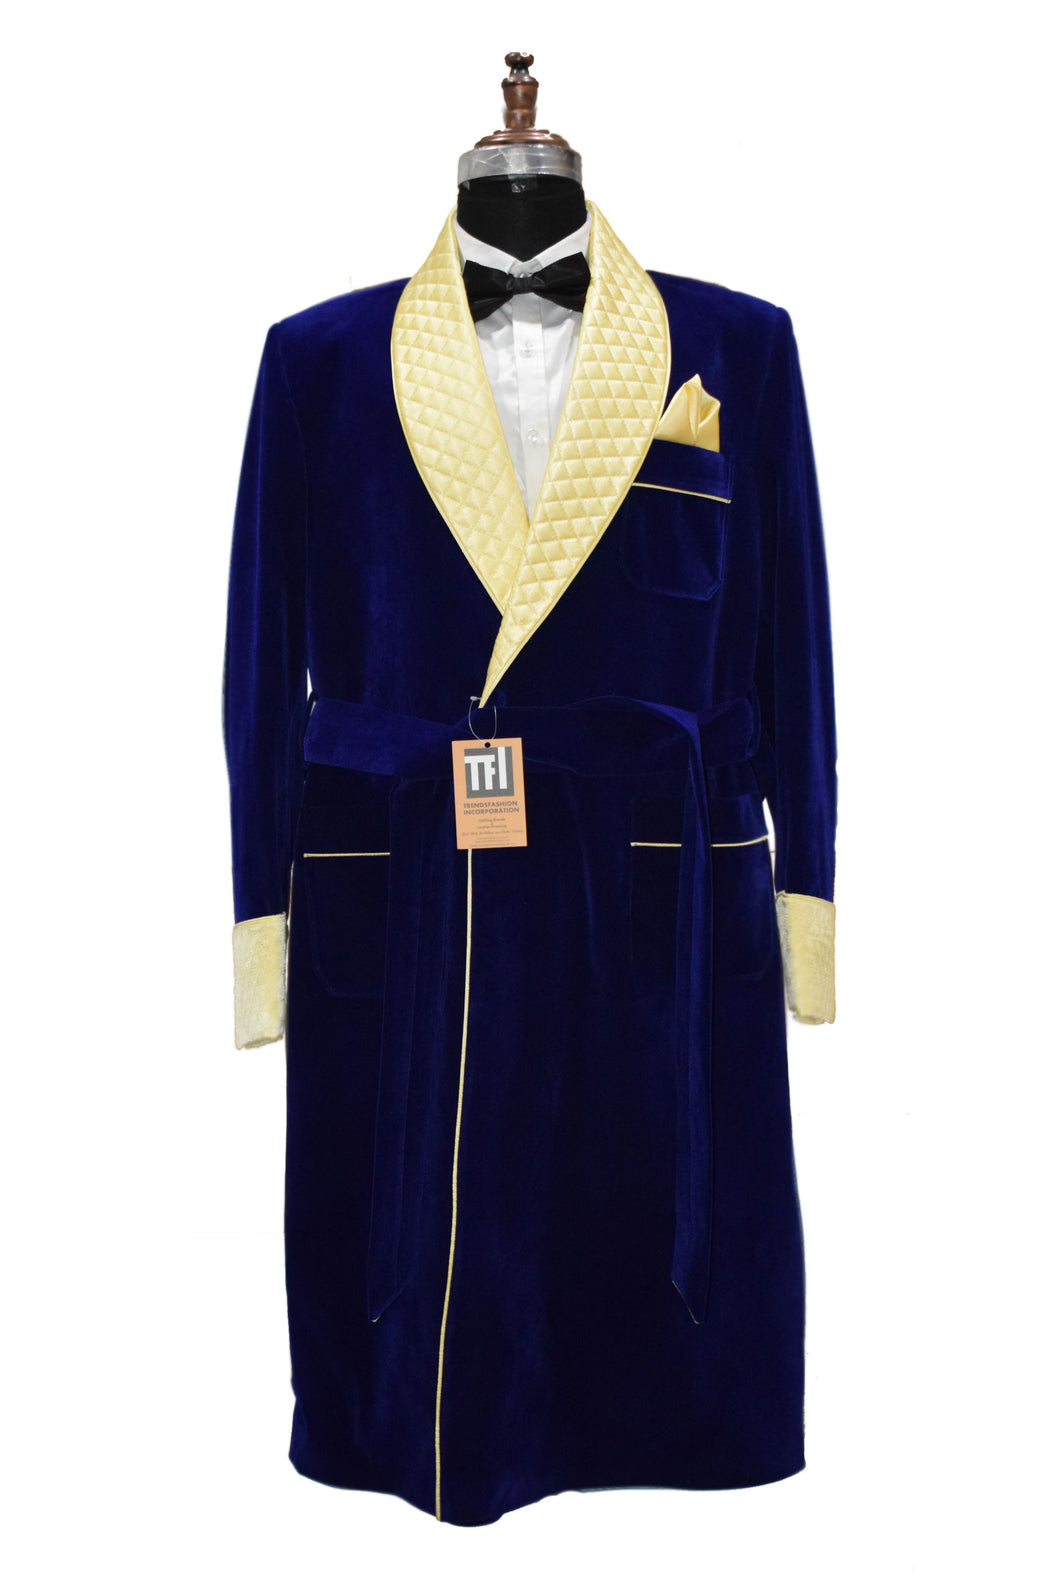 Man Royal Blue Smoking Jacket Designer Party Wear Long Coat